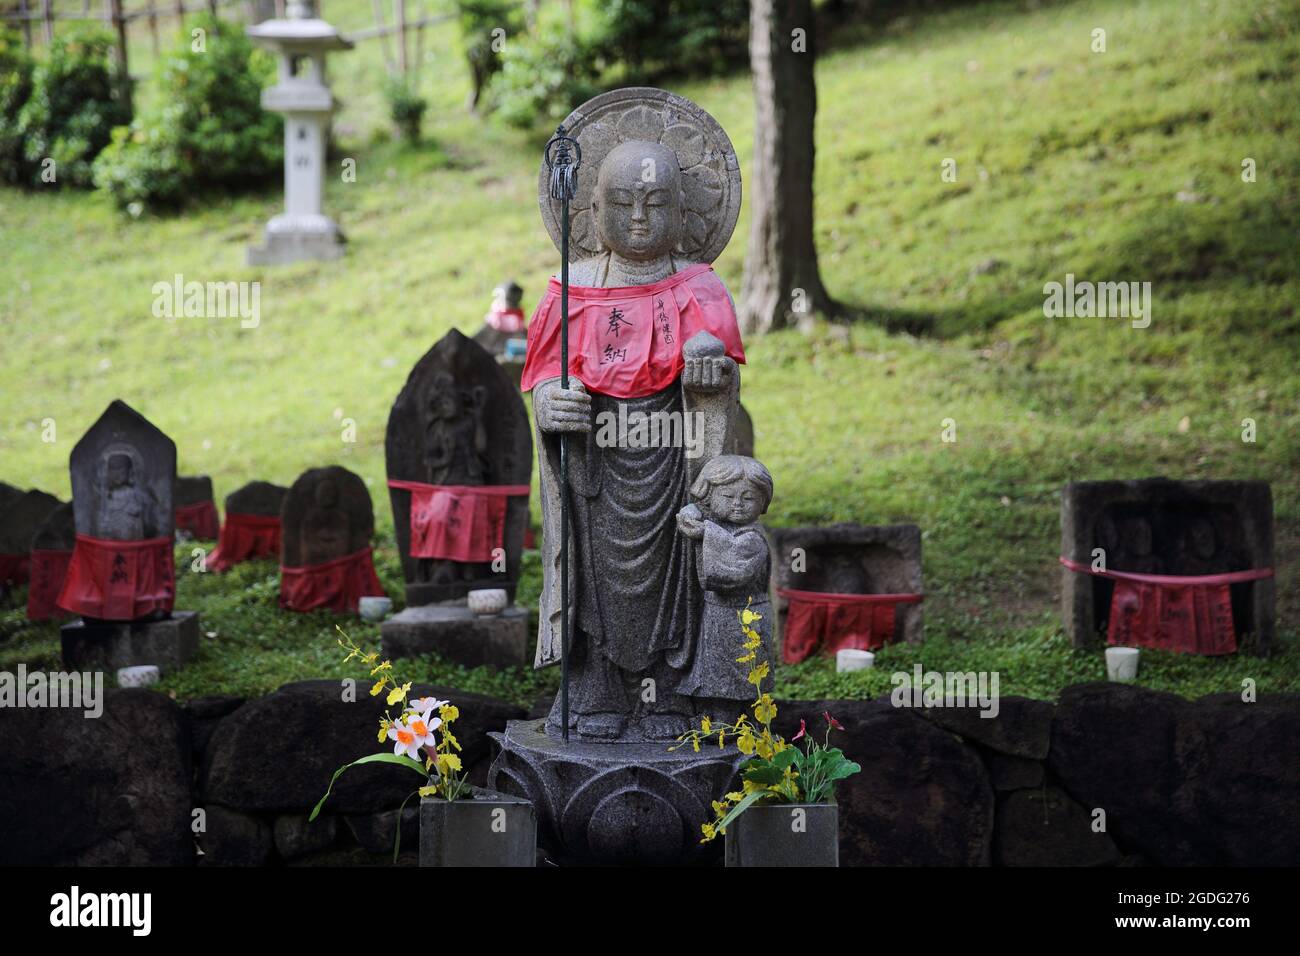 La piccola statua del monaco di buddha in pietra chiama jizo in giapponese Foto Stock